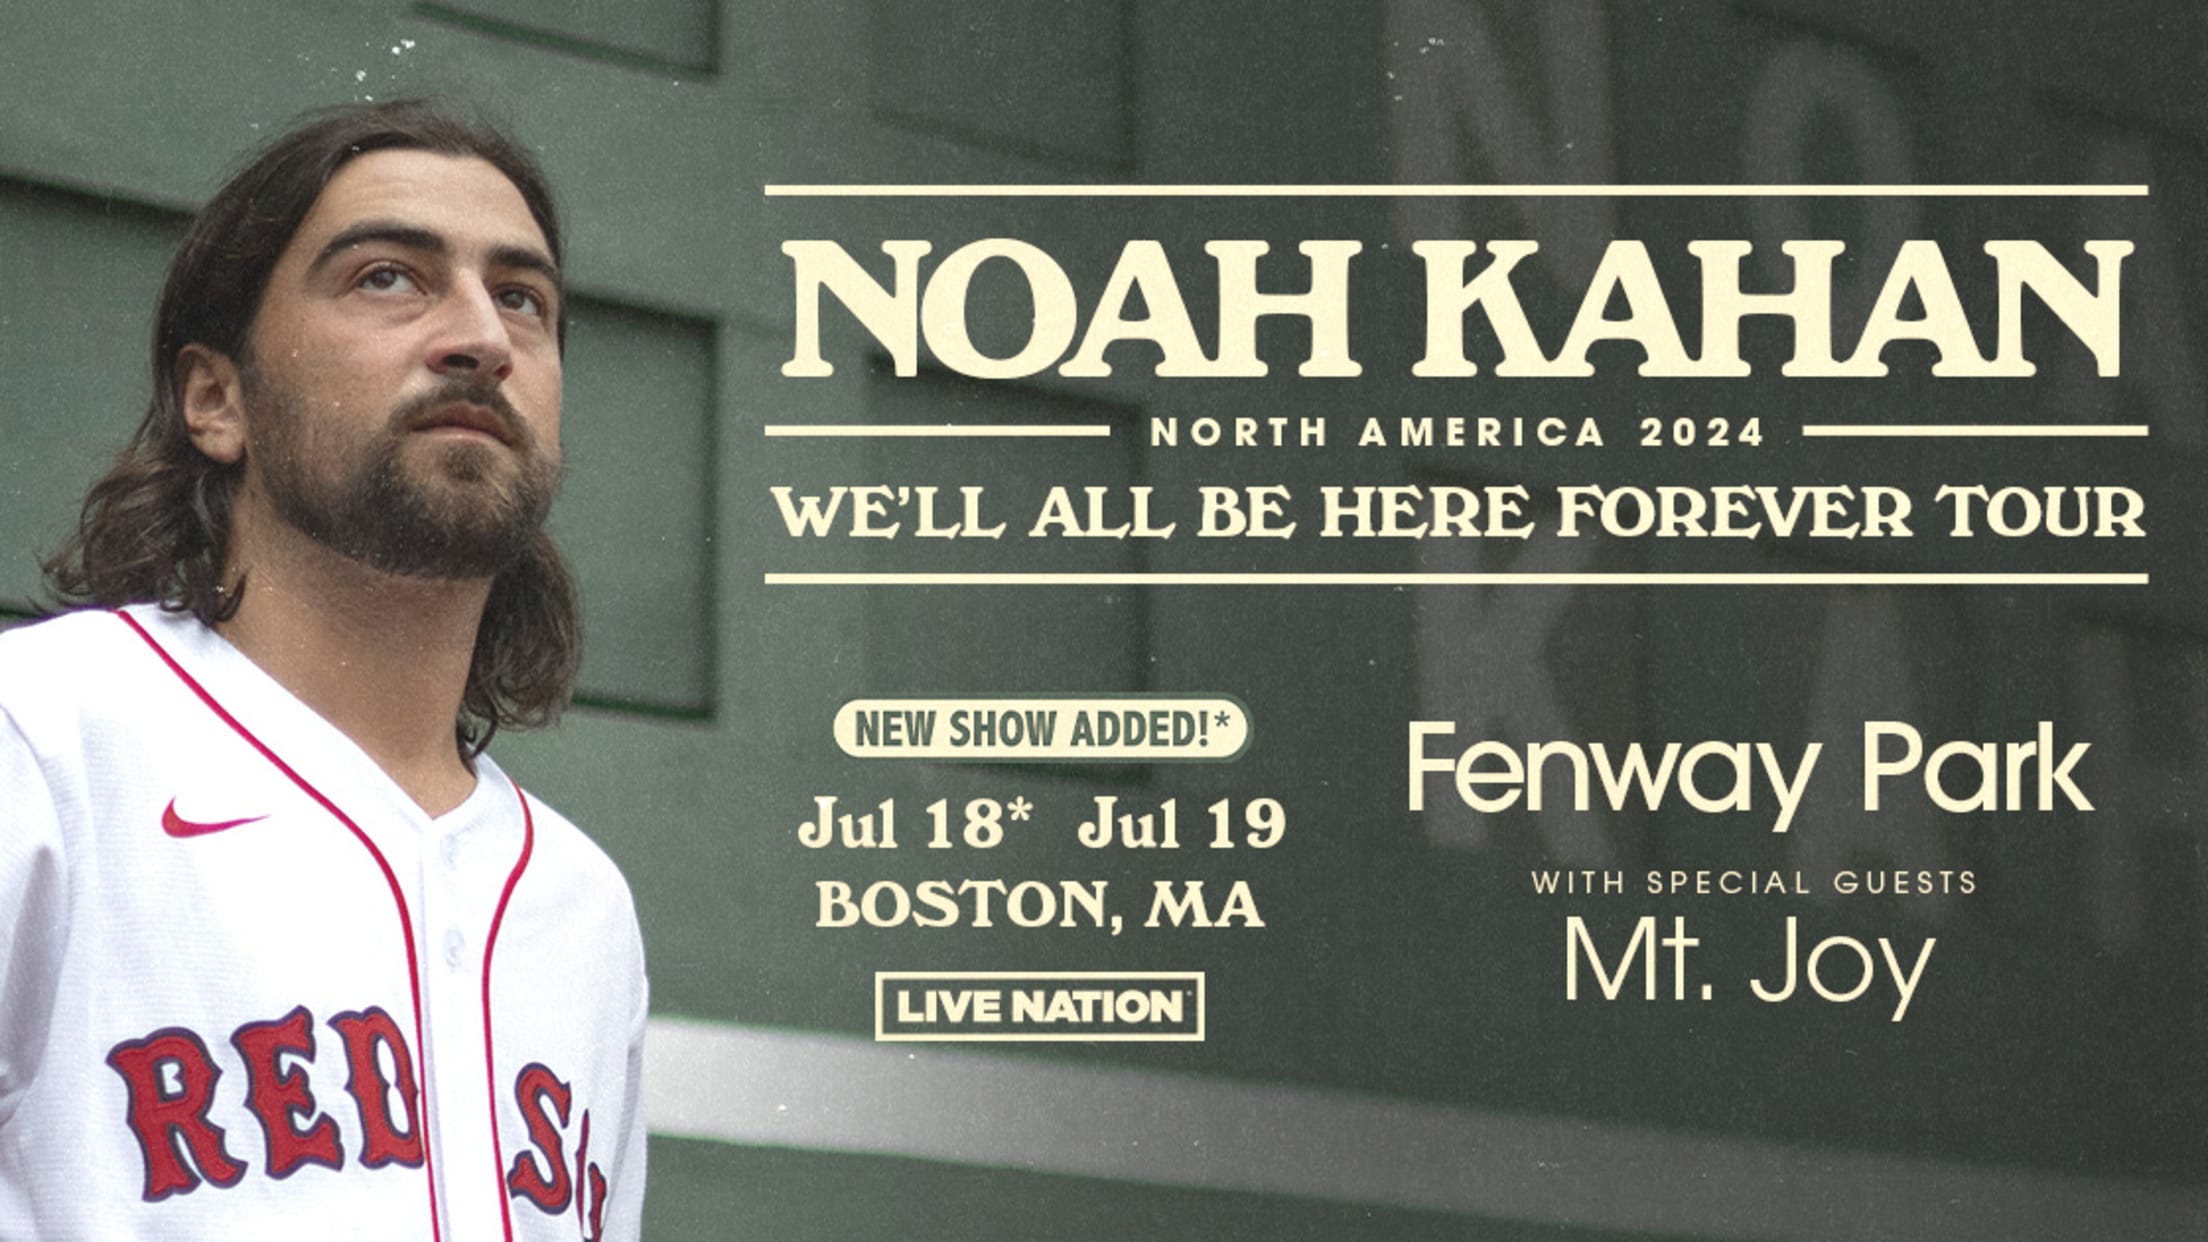 Noah Kahan announces tour, Fenway Park show in 2024